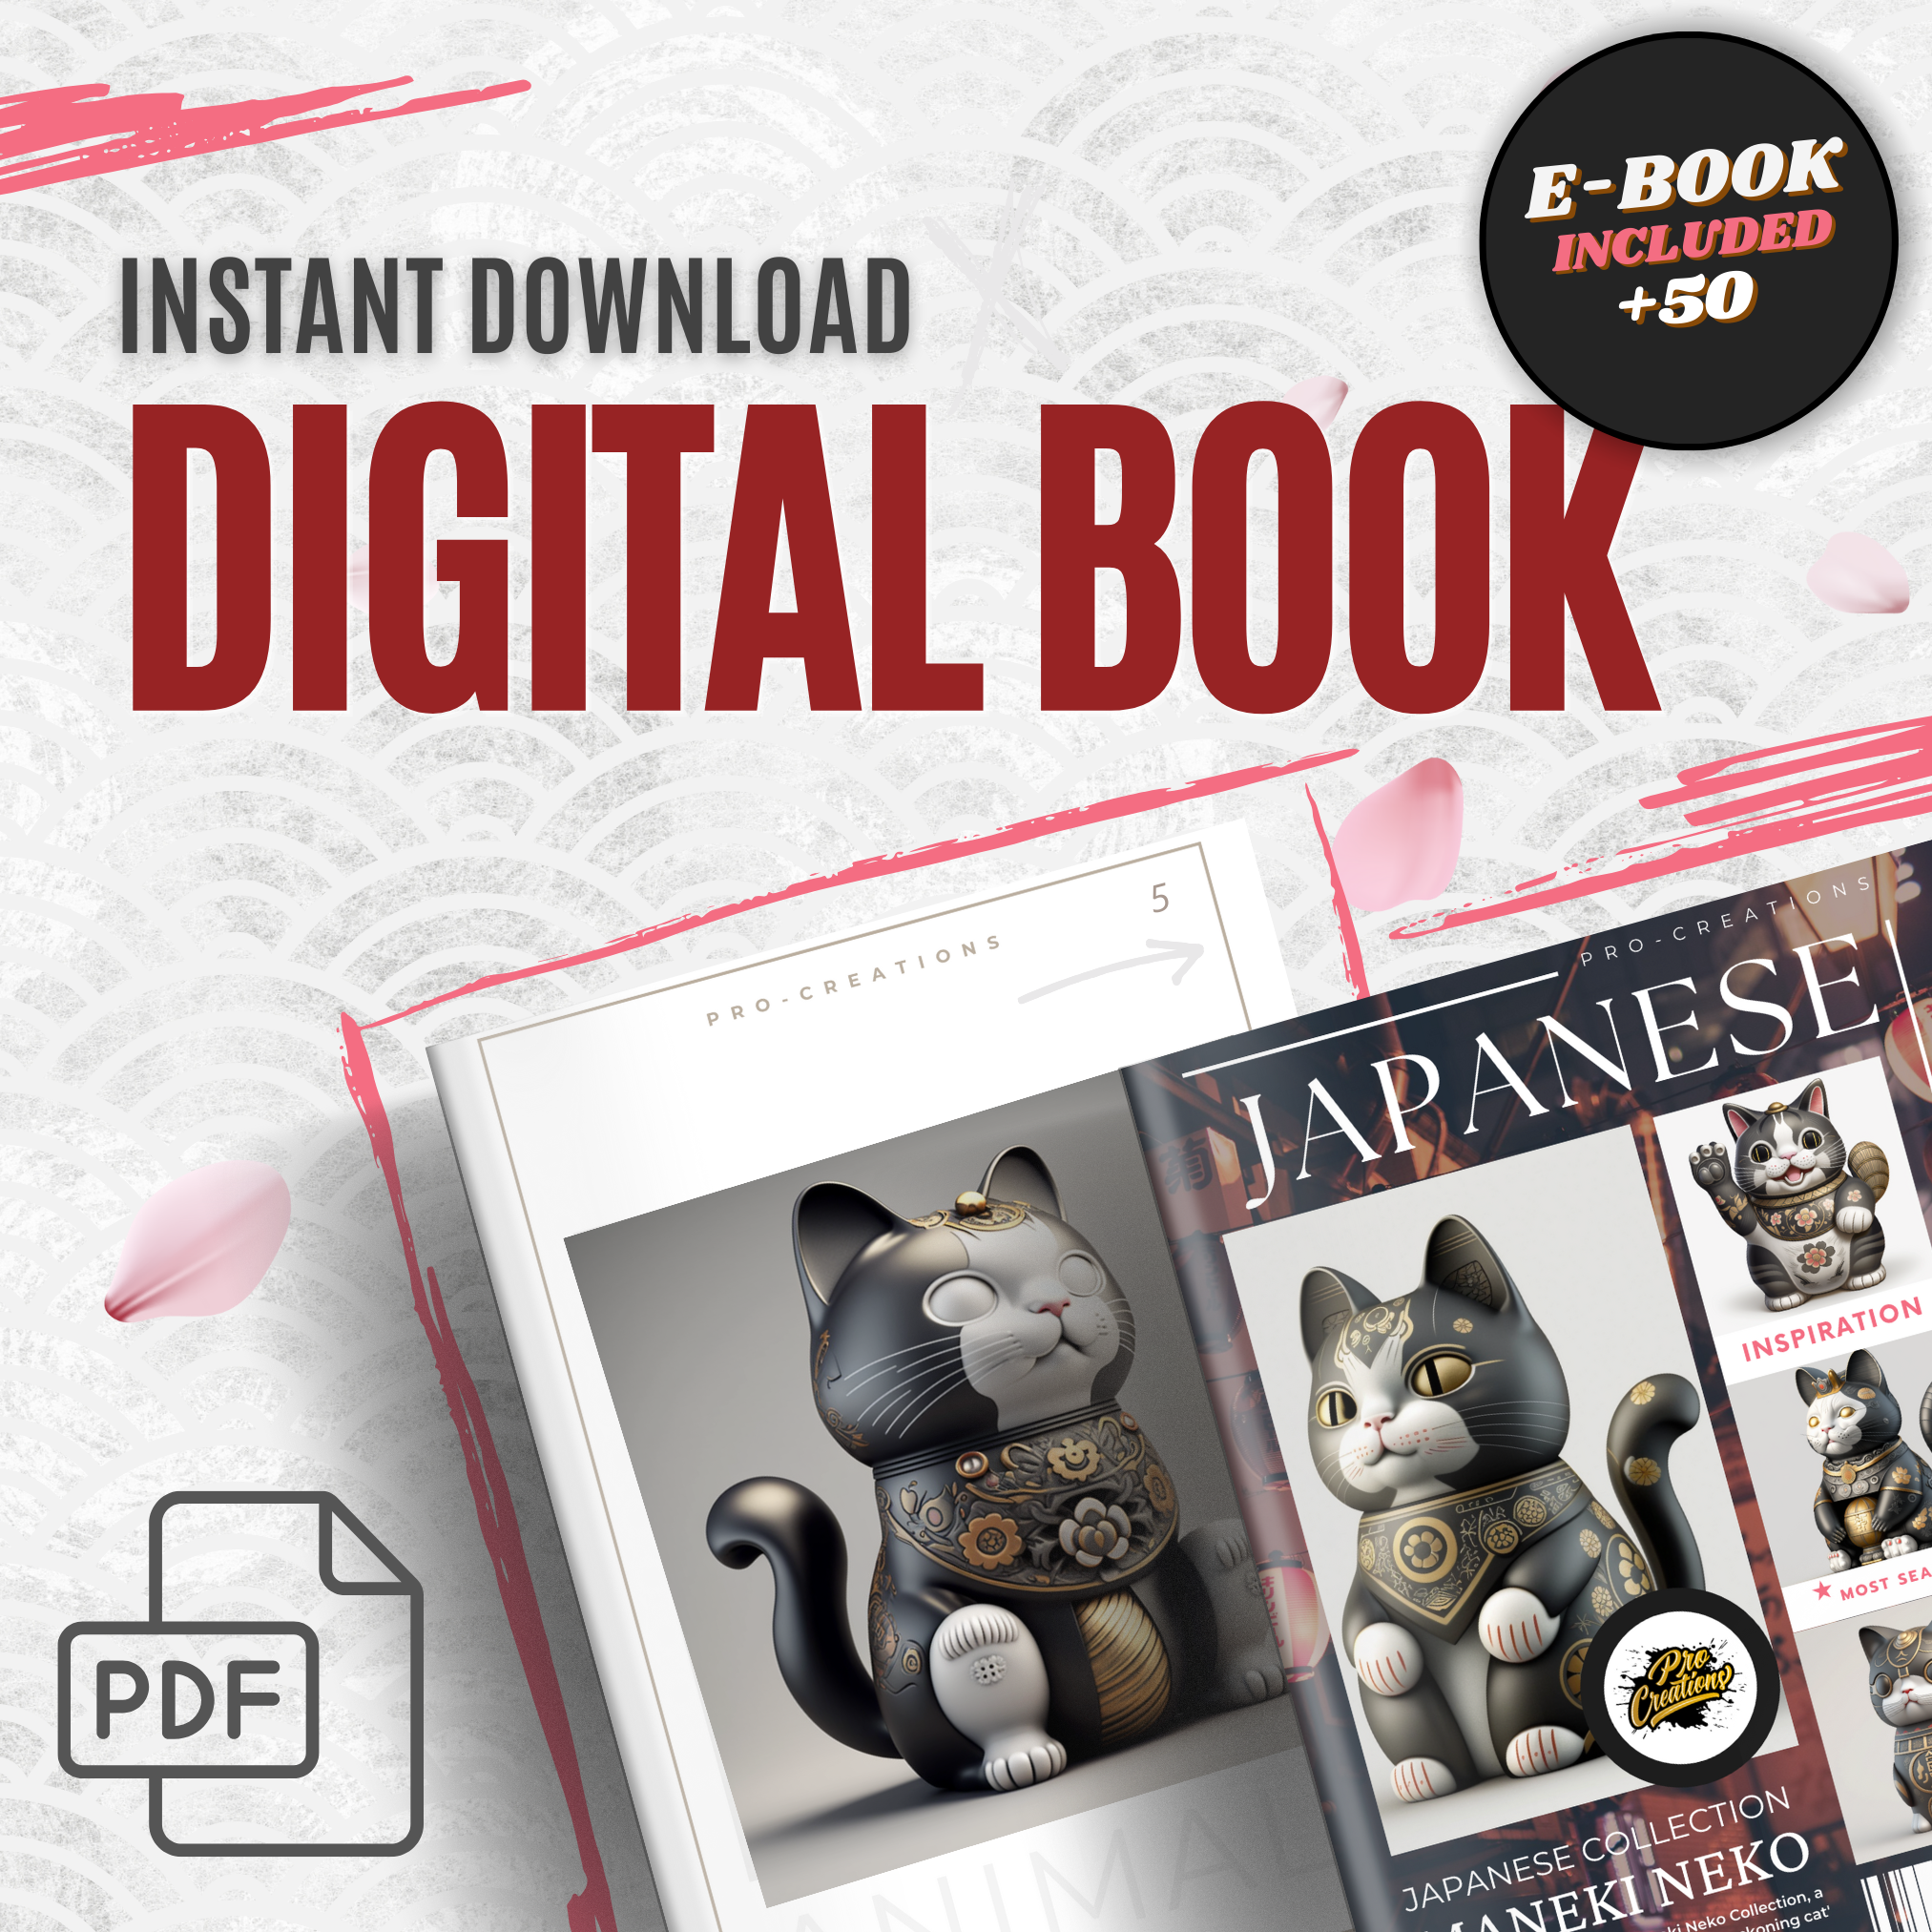 Maneki Neko Digitale Referenzdesignsammlung: 50 Procreate- und Skizzenbuchbilder